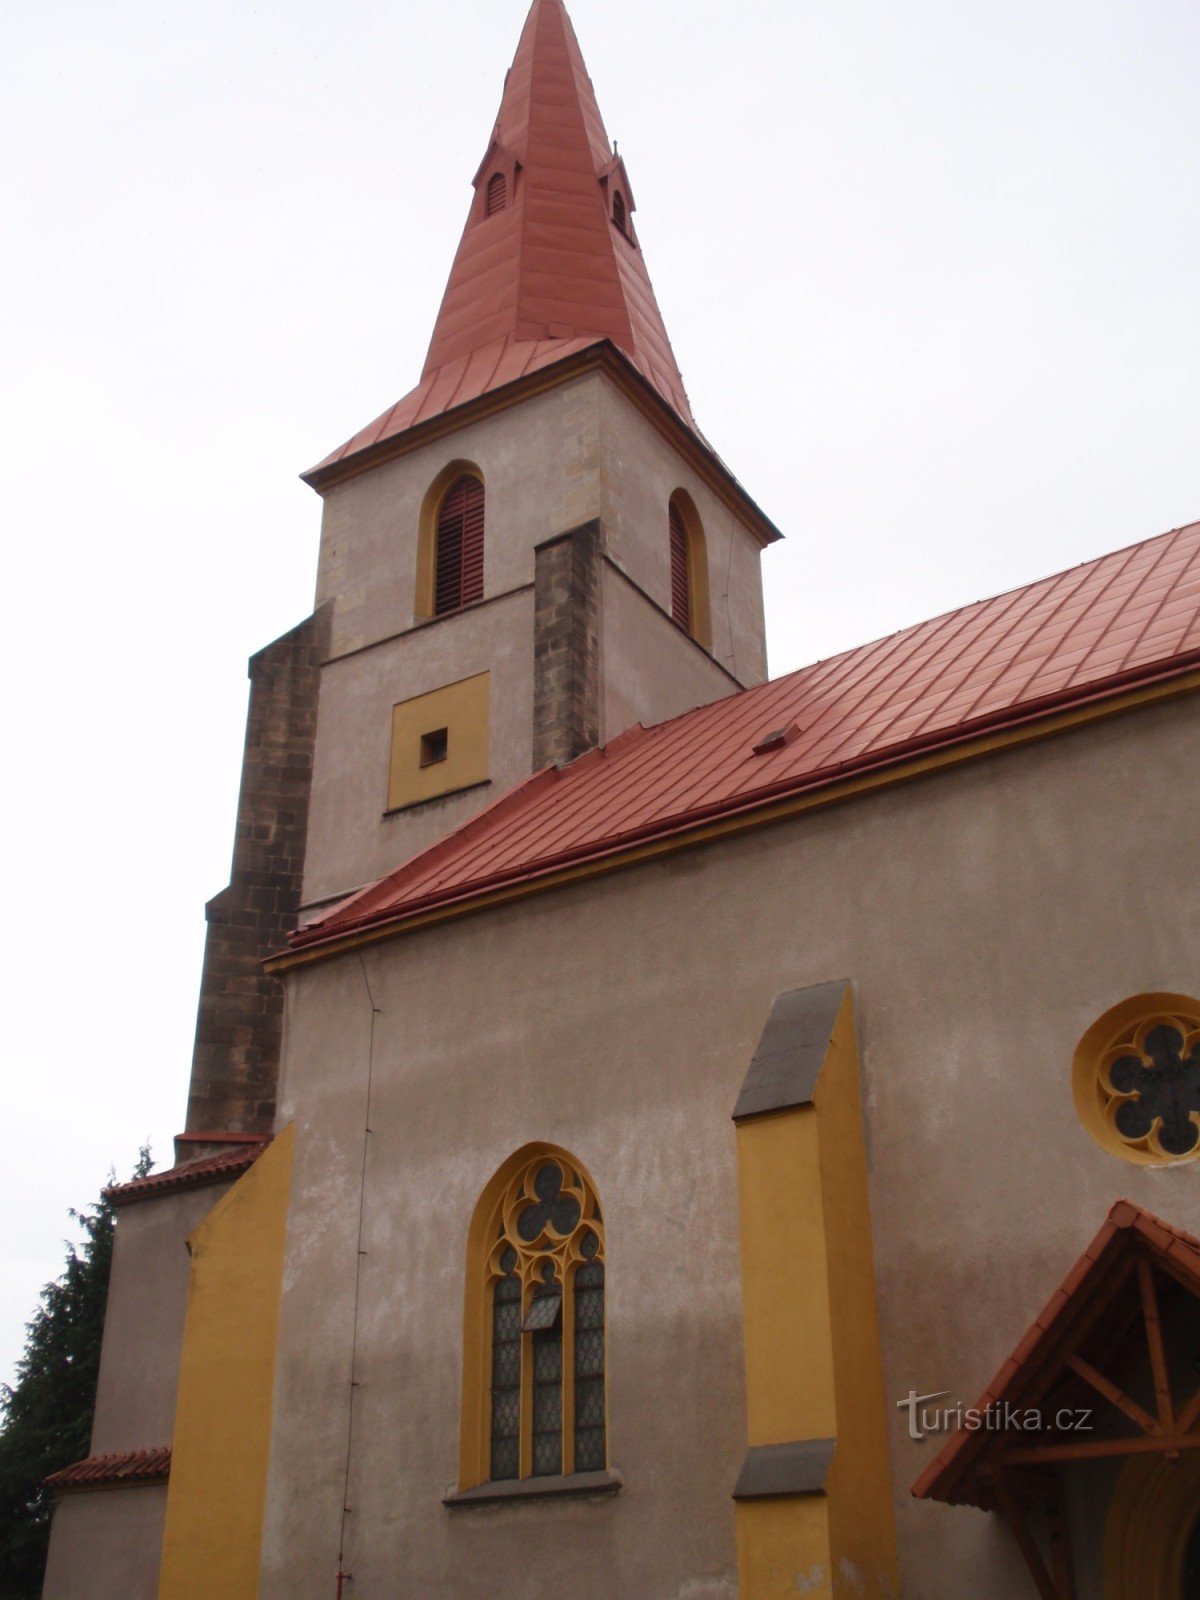 Kyrkliga monument i staden Chotěboře